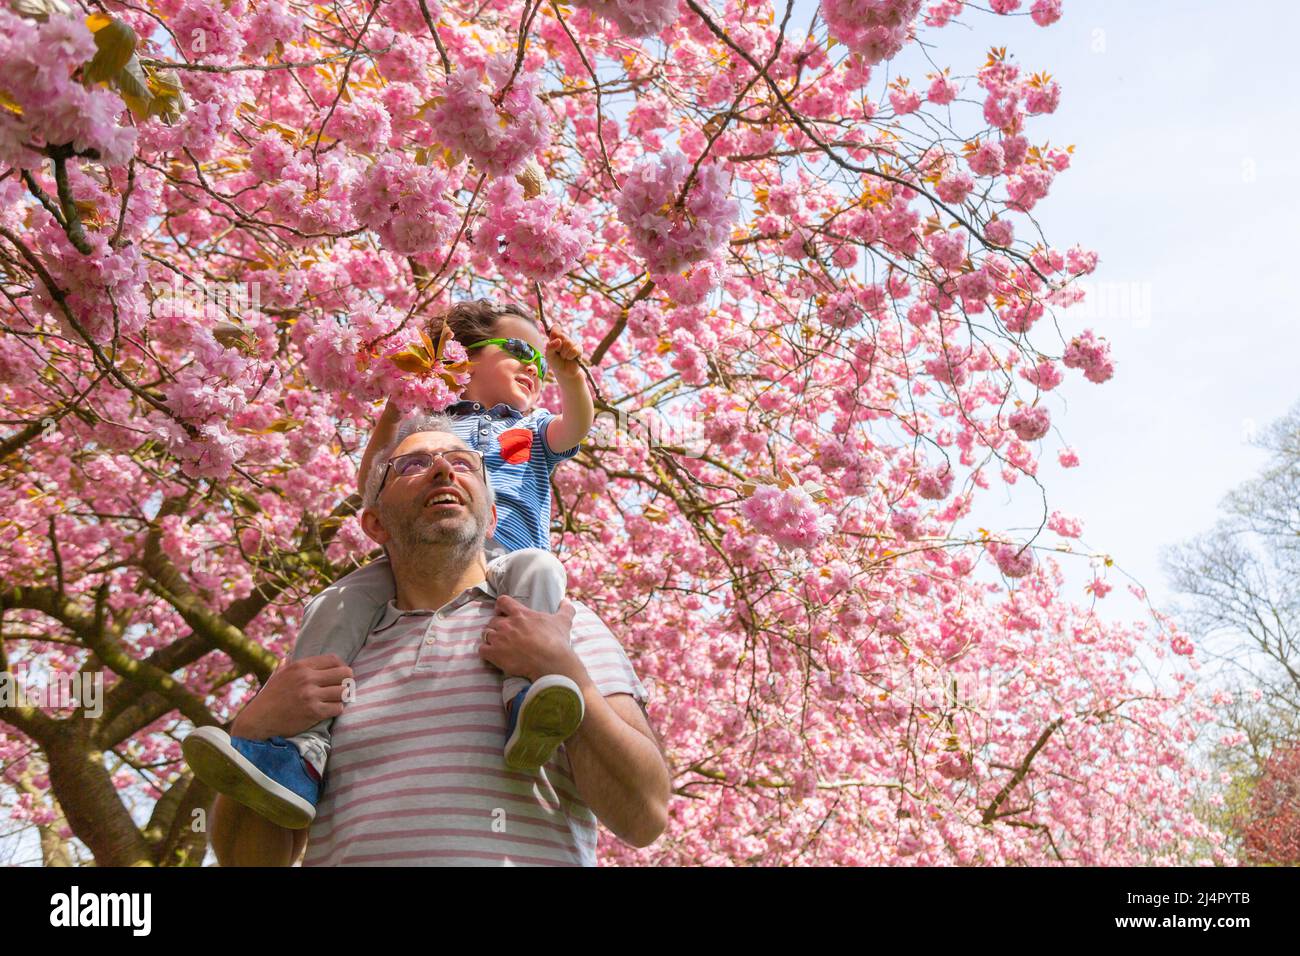 Birmingham, Reino Unido. 17th de Abr de 2022. Isaac Stanford, de tres años, se sienta sobre los hombros del padre Simon para acercarse a la flor del árbol rosa en su parque local en Birmingham, Reino Unido. Crédito: Peter Lodeman/Alamy Live News Foto de stock